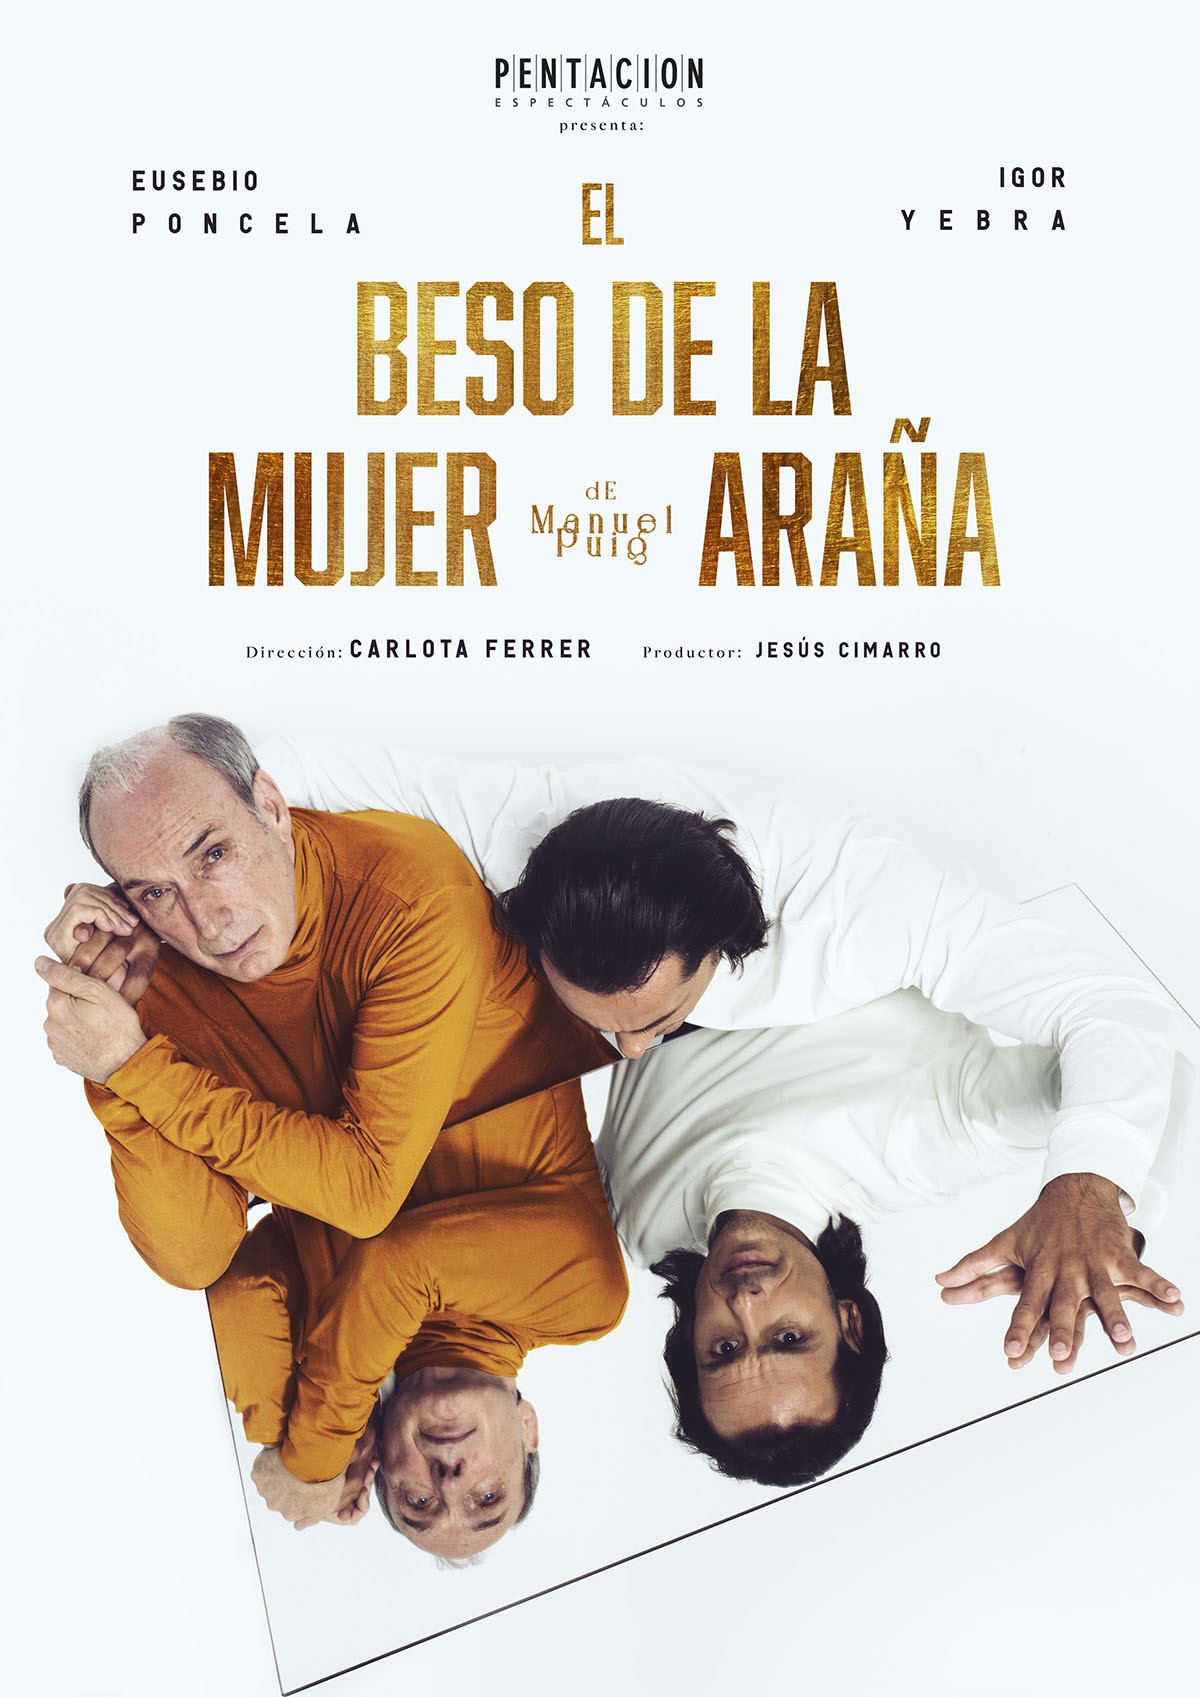 ‘El beso de la mujer araña’ llega a Torrent interpretada por Eusebio Poncela e Igor Yebra bajo la dirección de Carlota Ferrer